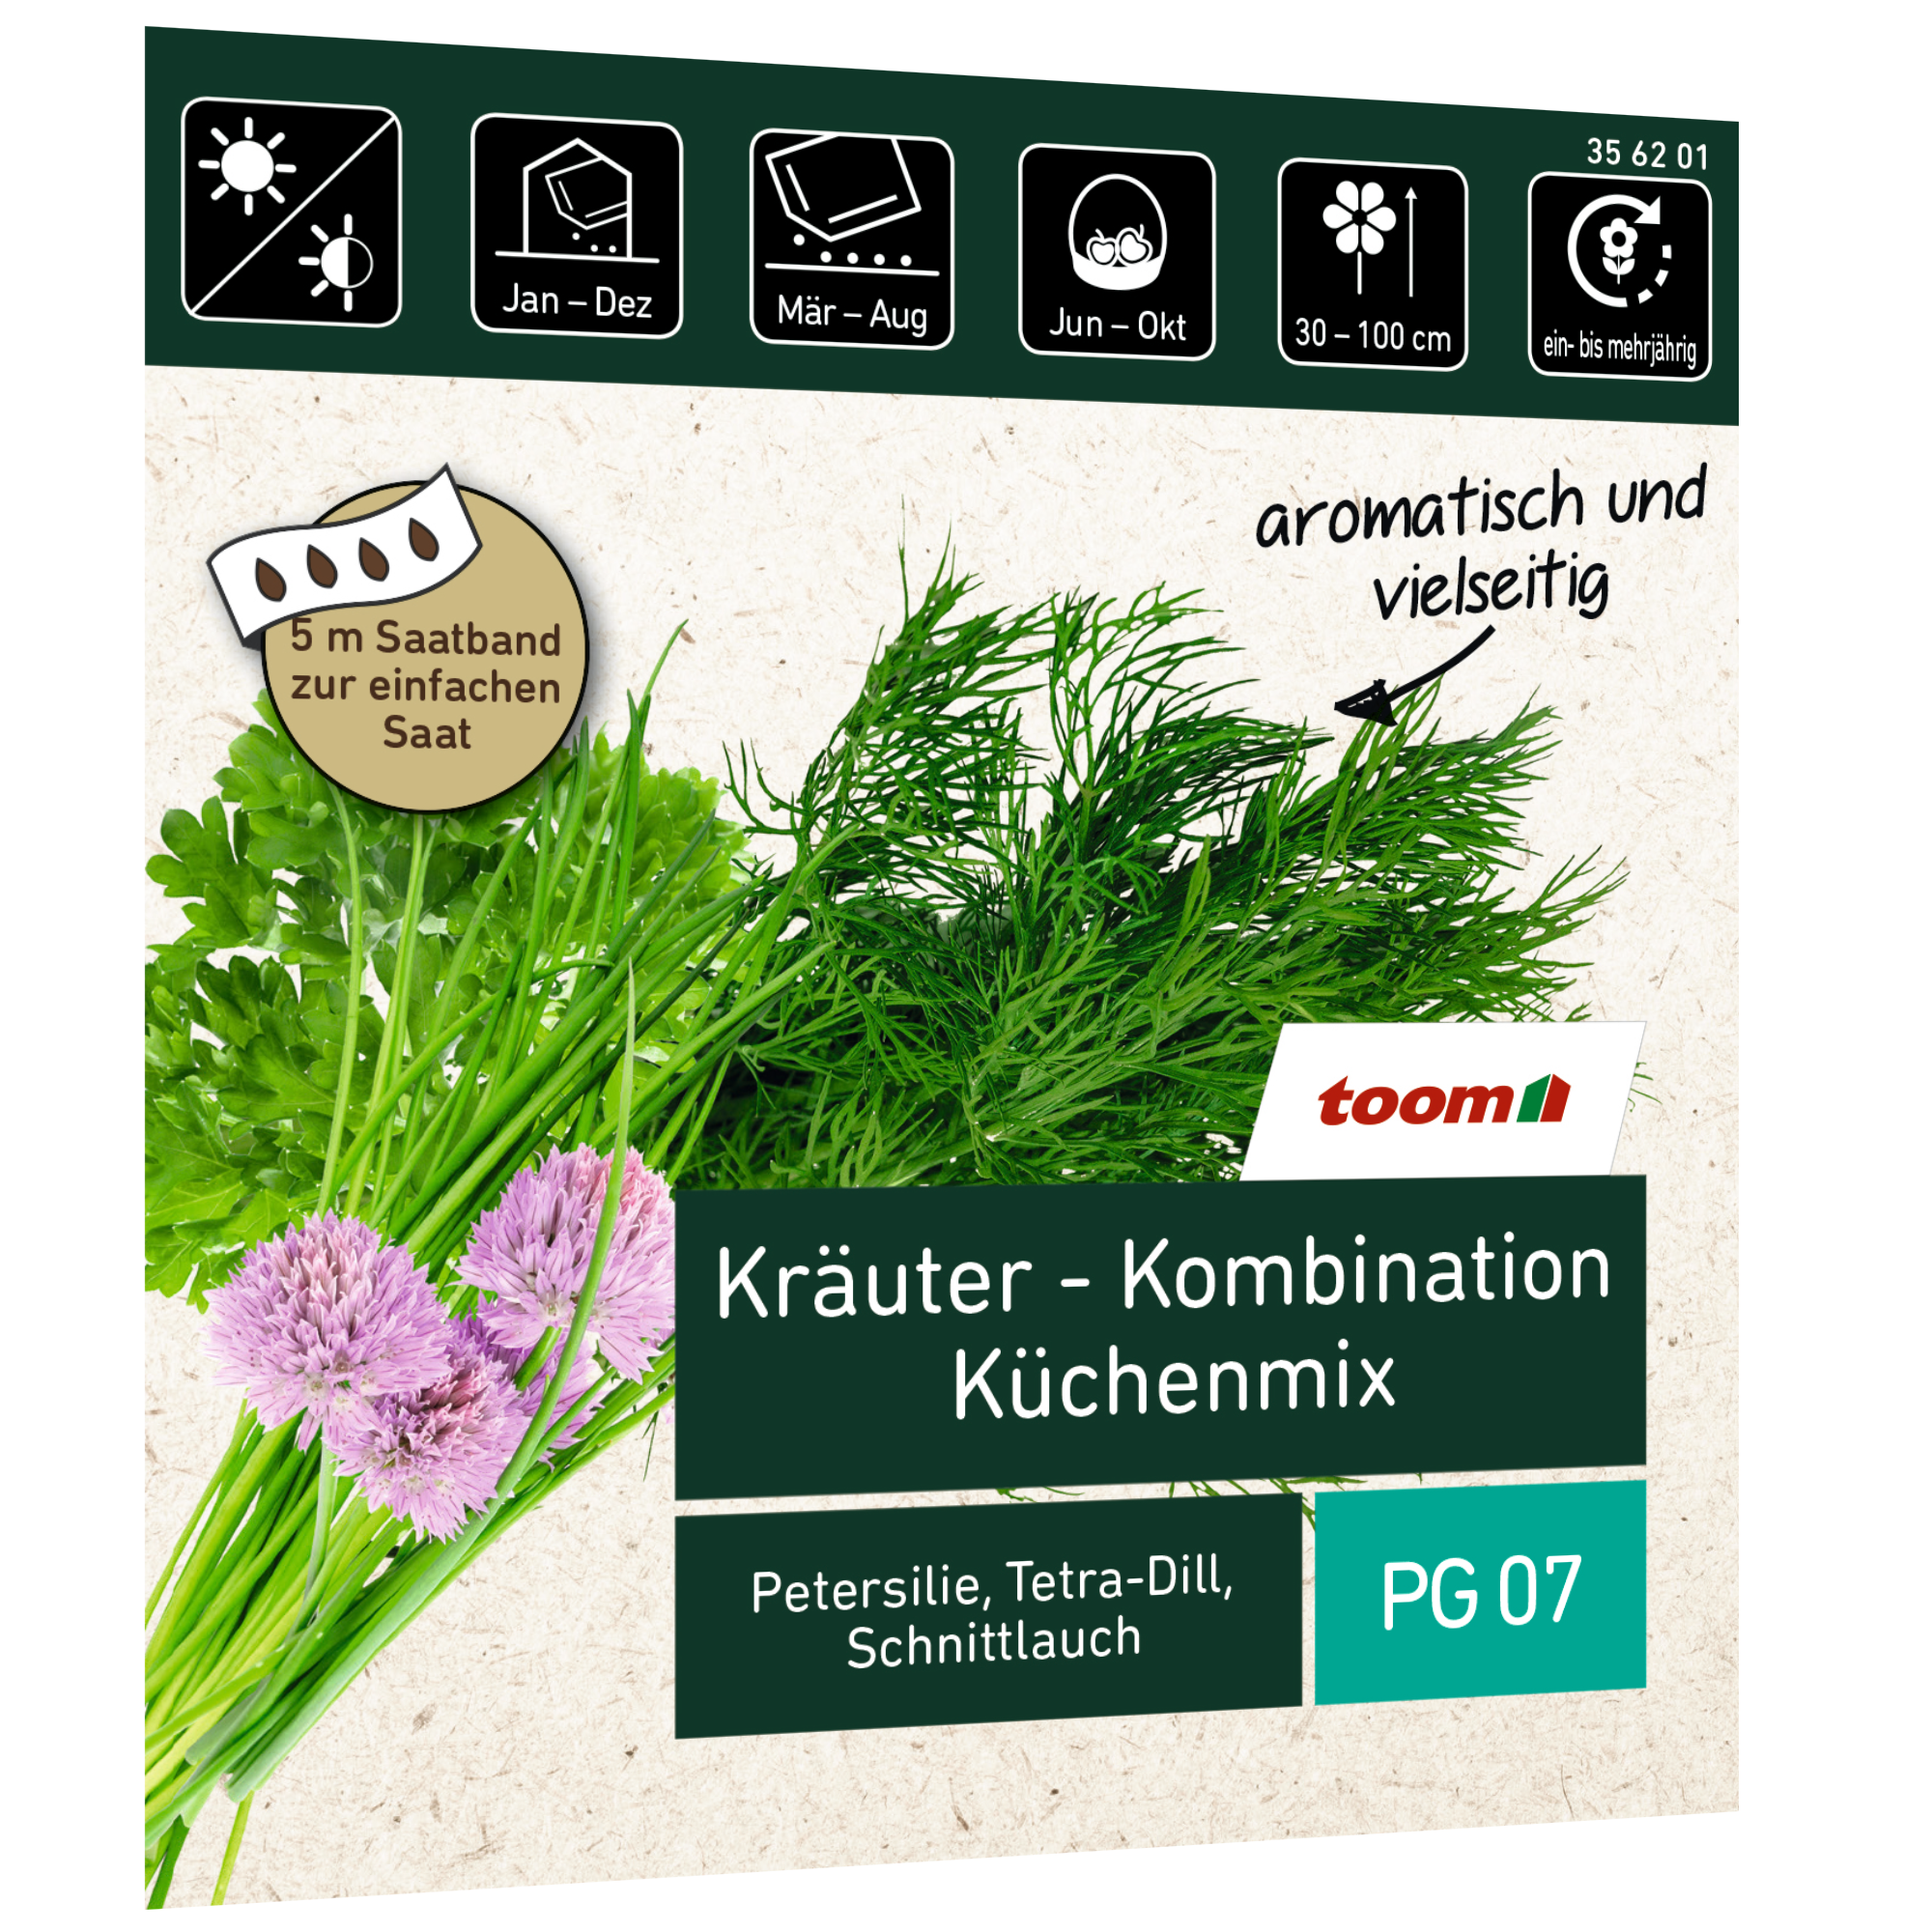 Kräuter 'Küchenmix' Saatband 5 m + product picture